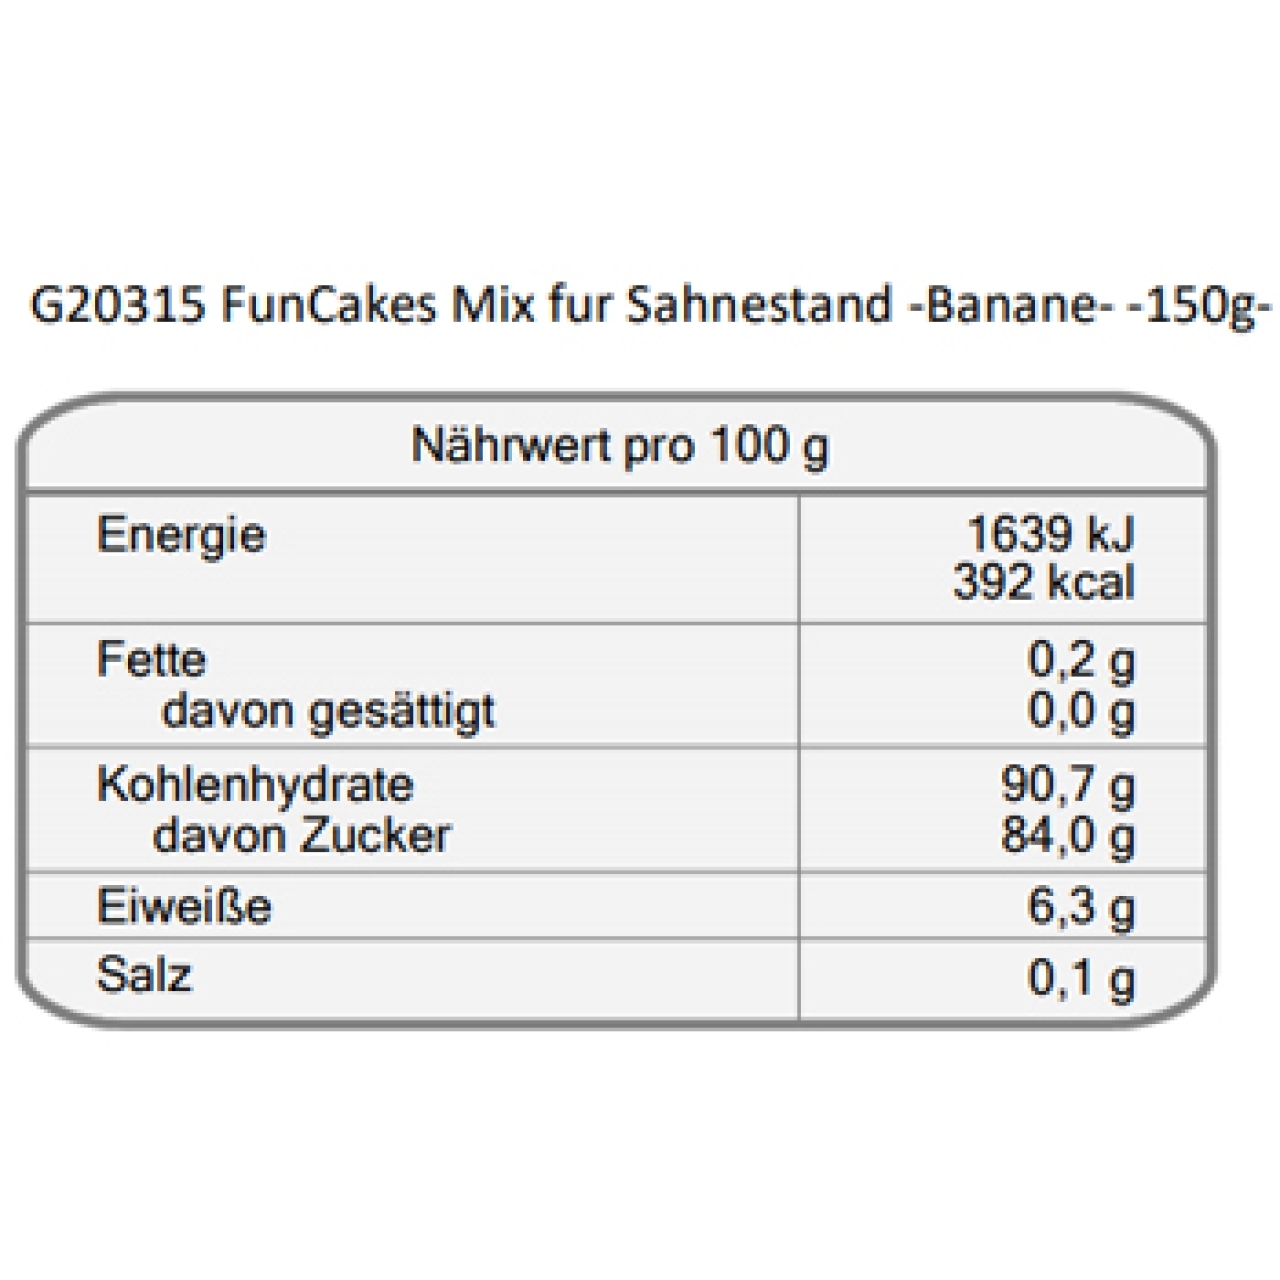 Sahnefest "Banane", 150 g, FunCakes